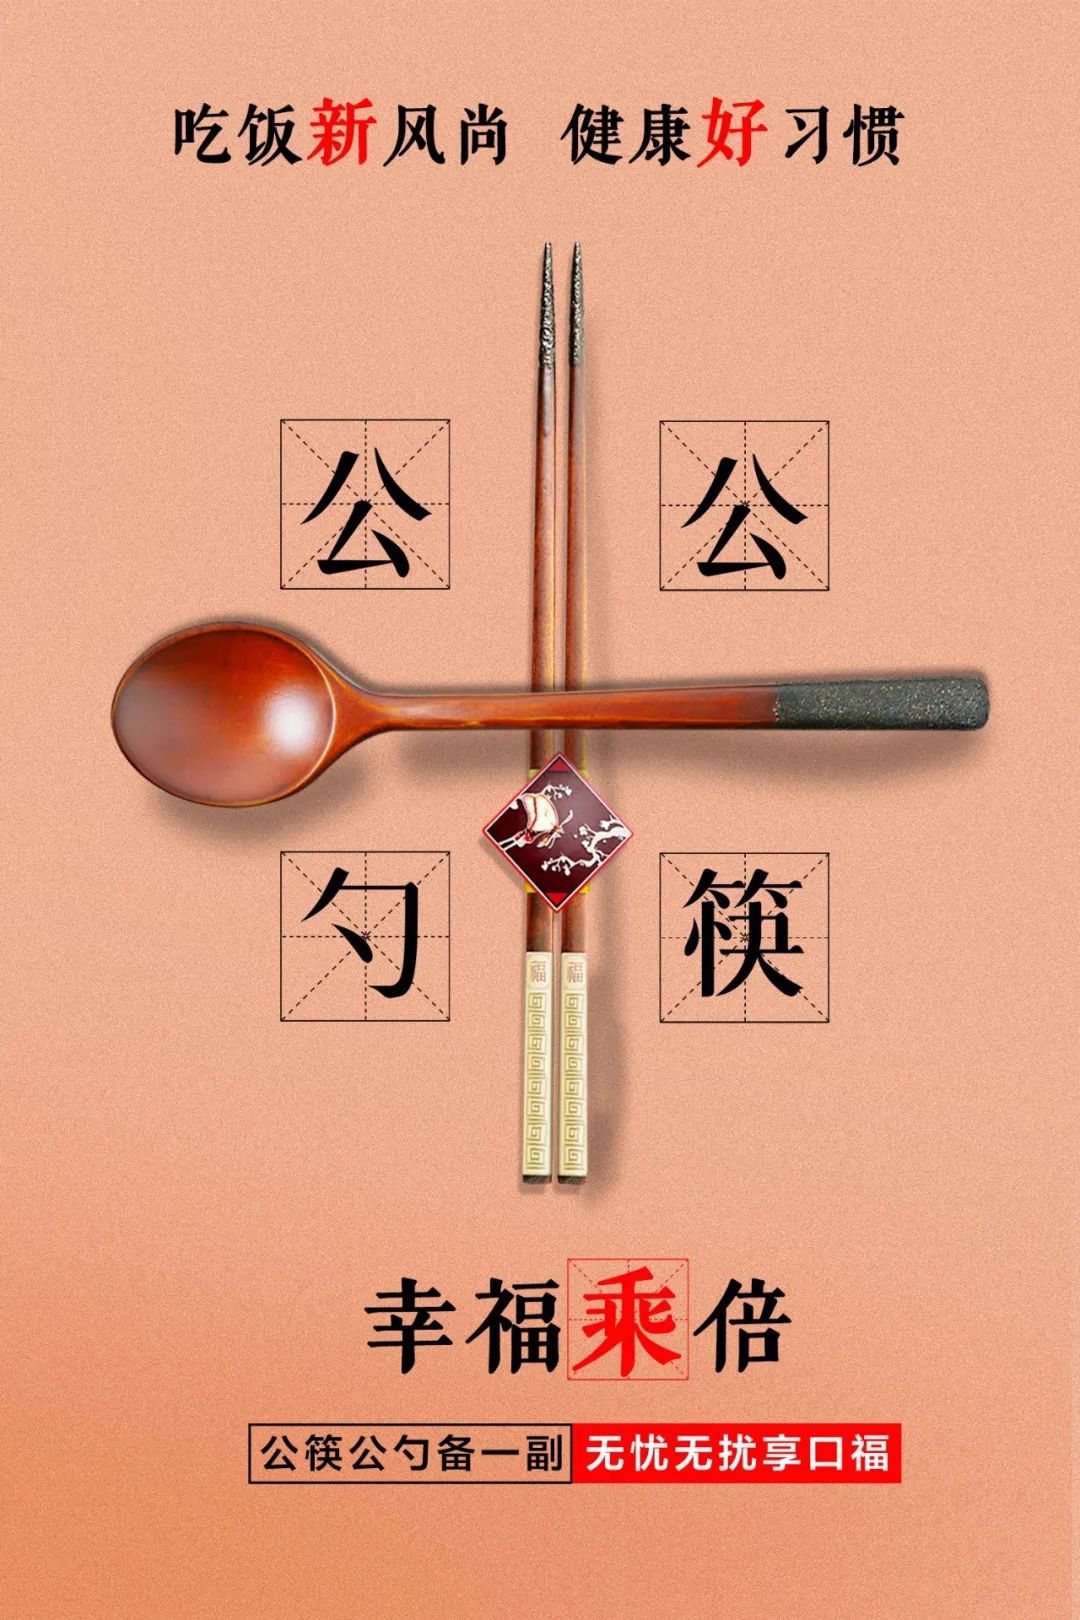 文明餐桌用公筷公勺从你我做起